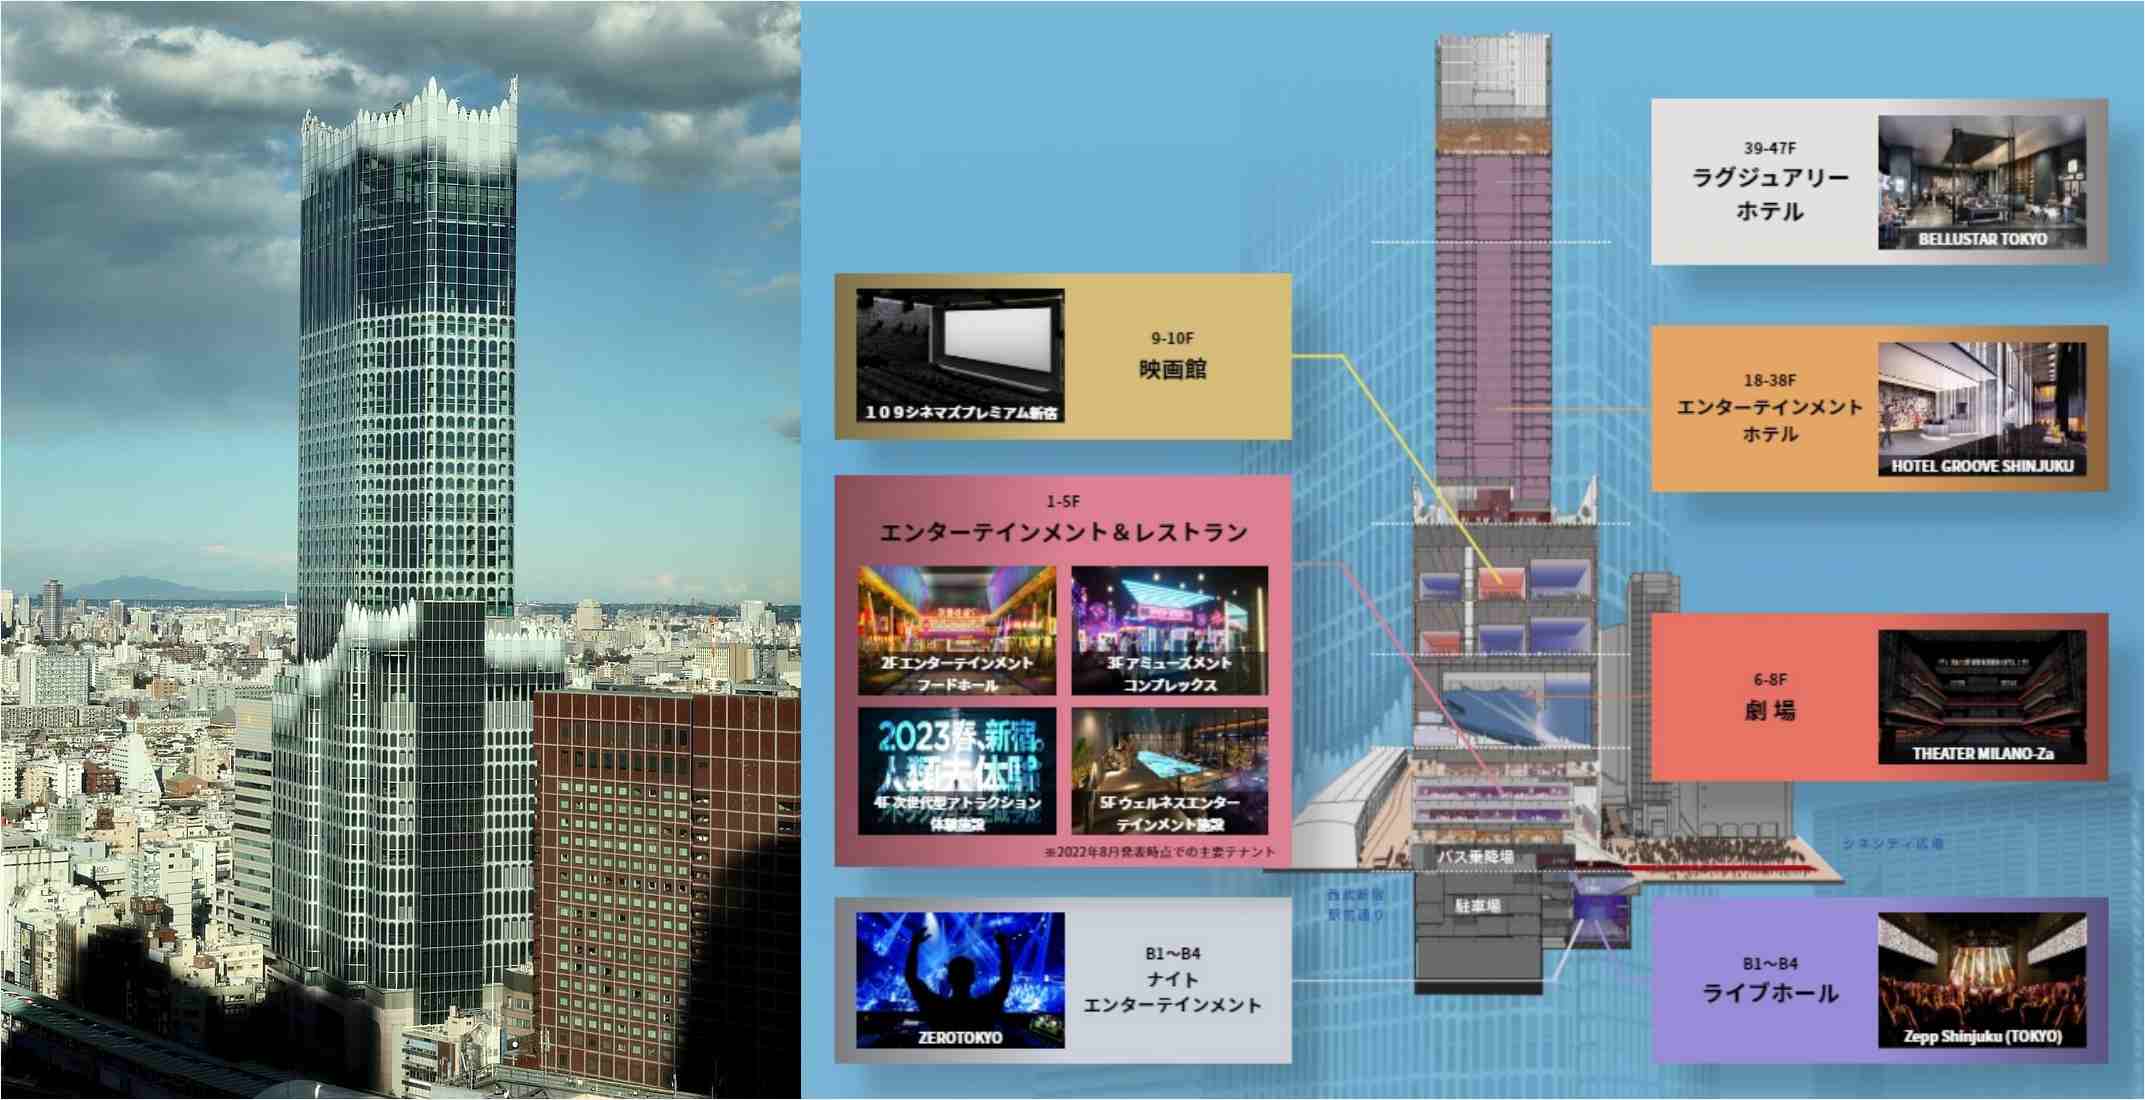 아래서부터 설명하면 엔터테인먼트 공연장 ZERO TOKYO, 라이브하우스 ZEPP SHINJYUKU(TOKYO), 지상으로 올라와 레스토랑 식당가와 엔터테인먼트 시설, 그리고 '밀라노좌'를 이어가는 공연장 'TEATER MILANO-Za'와 멀티플렉스 시네마 '109시네마즈', 그 위로는 두 개의 호텔로 이어져요.